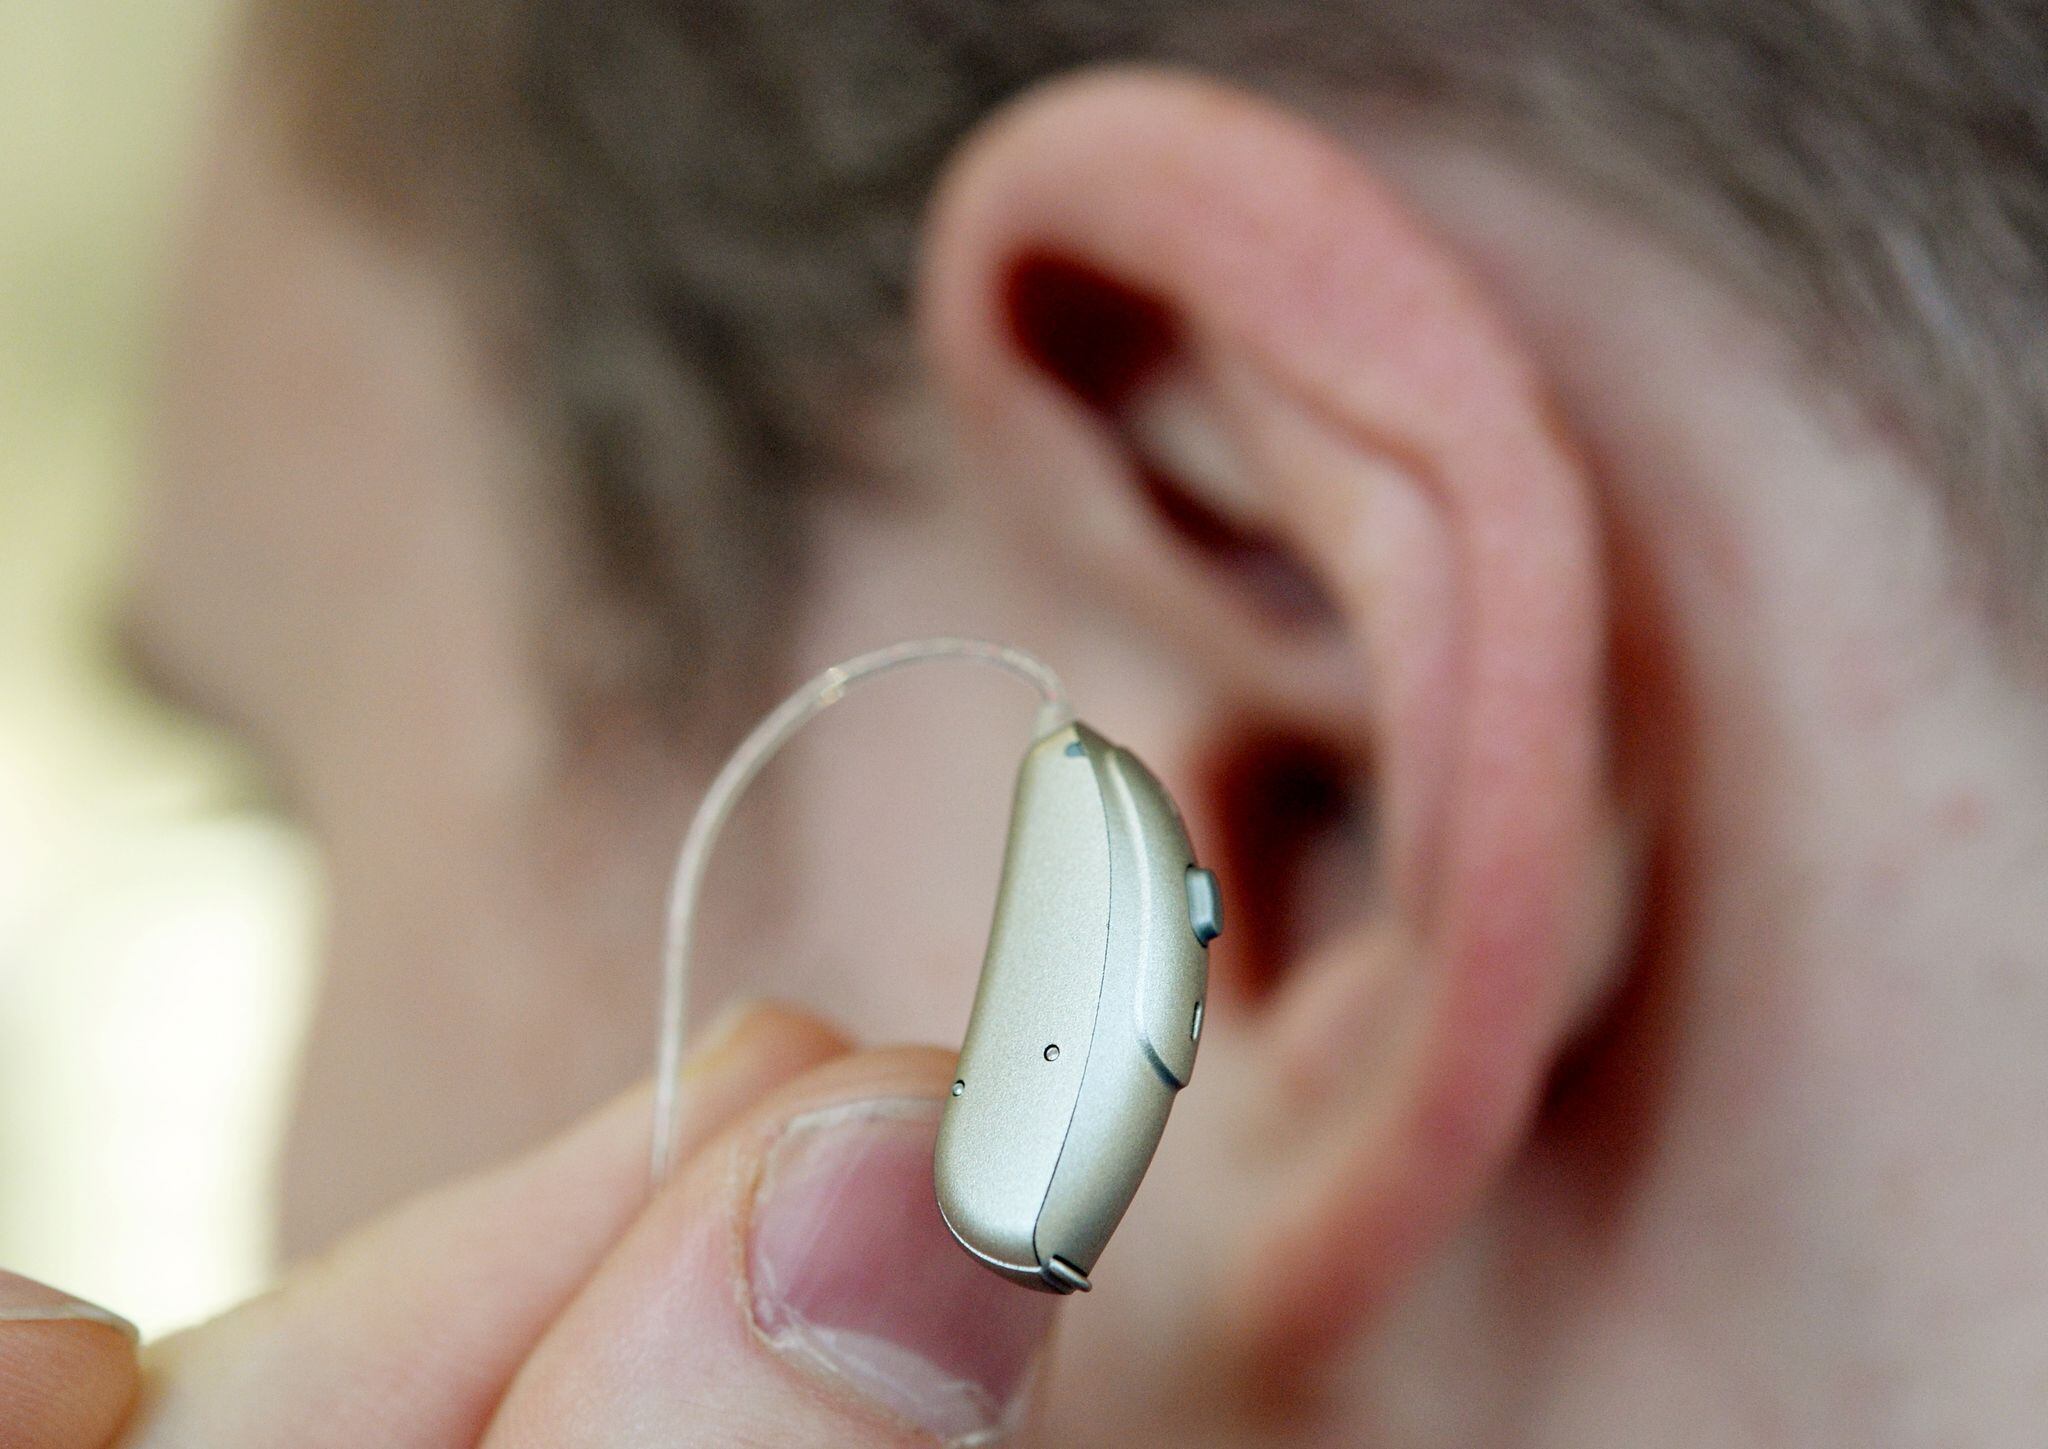 Los audífonos ayudan, pero muchos no quieren usarlos por asociarlos con la vejez (Bernd Weissbrod/dpa)